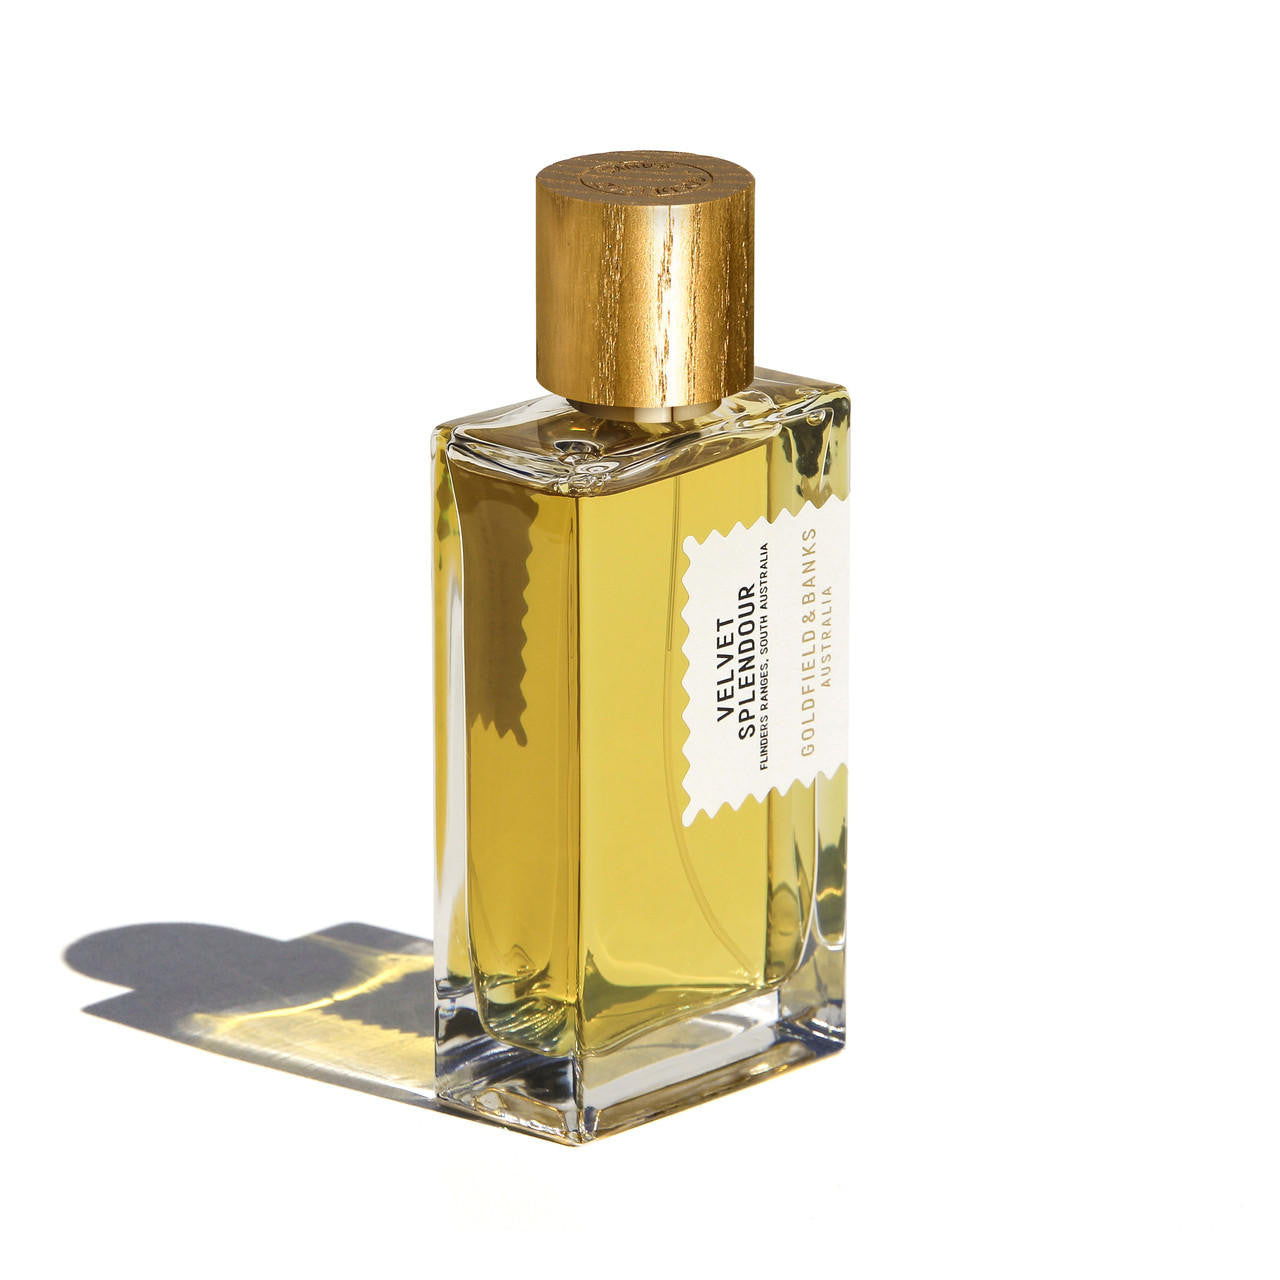  Goldfield & Banks Australia VELVET SPLENDOUR Perfume Concentrate 